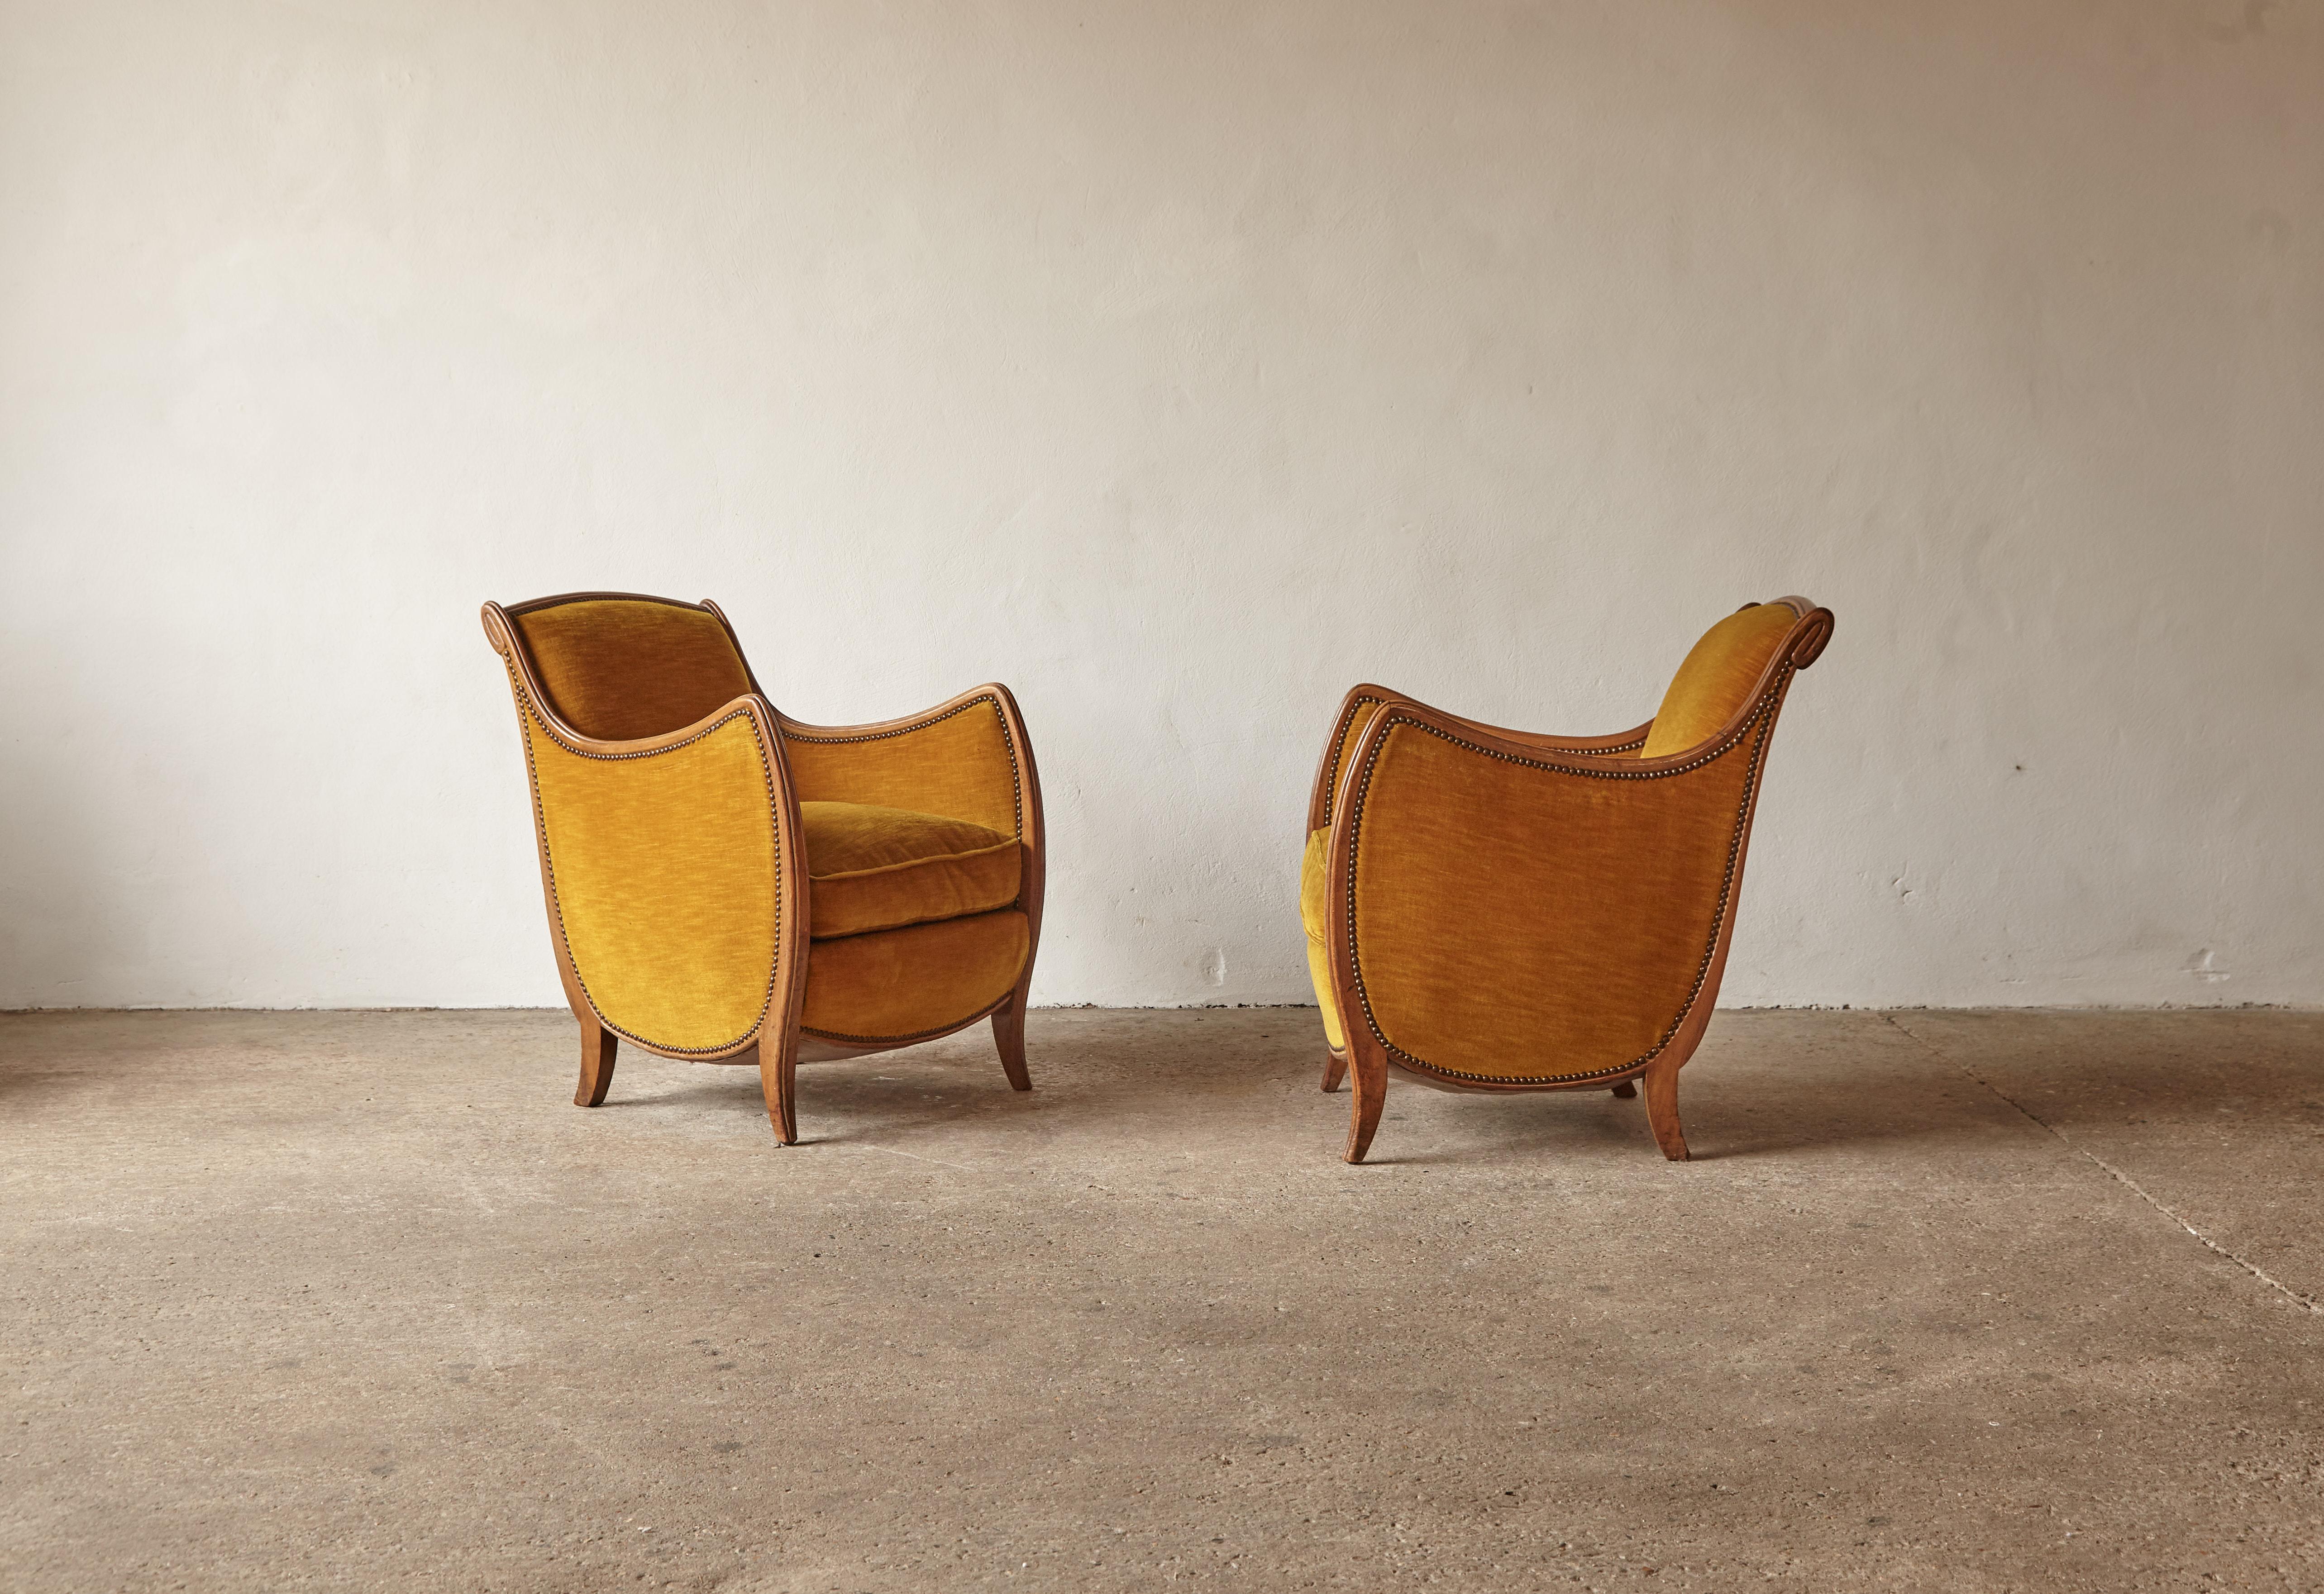 Une paire étonnante et rare de chaises françaises art déco des années 1930/40. Les chaises ont été retapissées (probablement dans les années 1980). Nous pouvons retapisser en COM. Livraison rapide dans le monde entier.
  




Les clients du